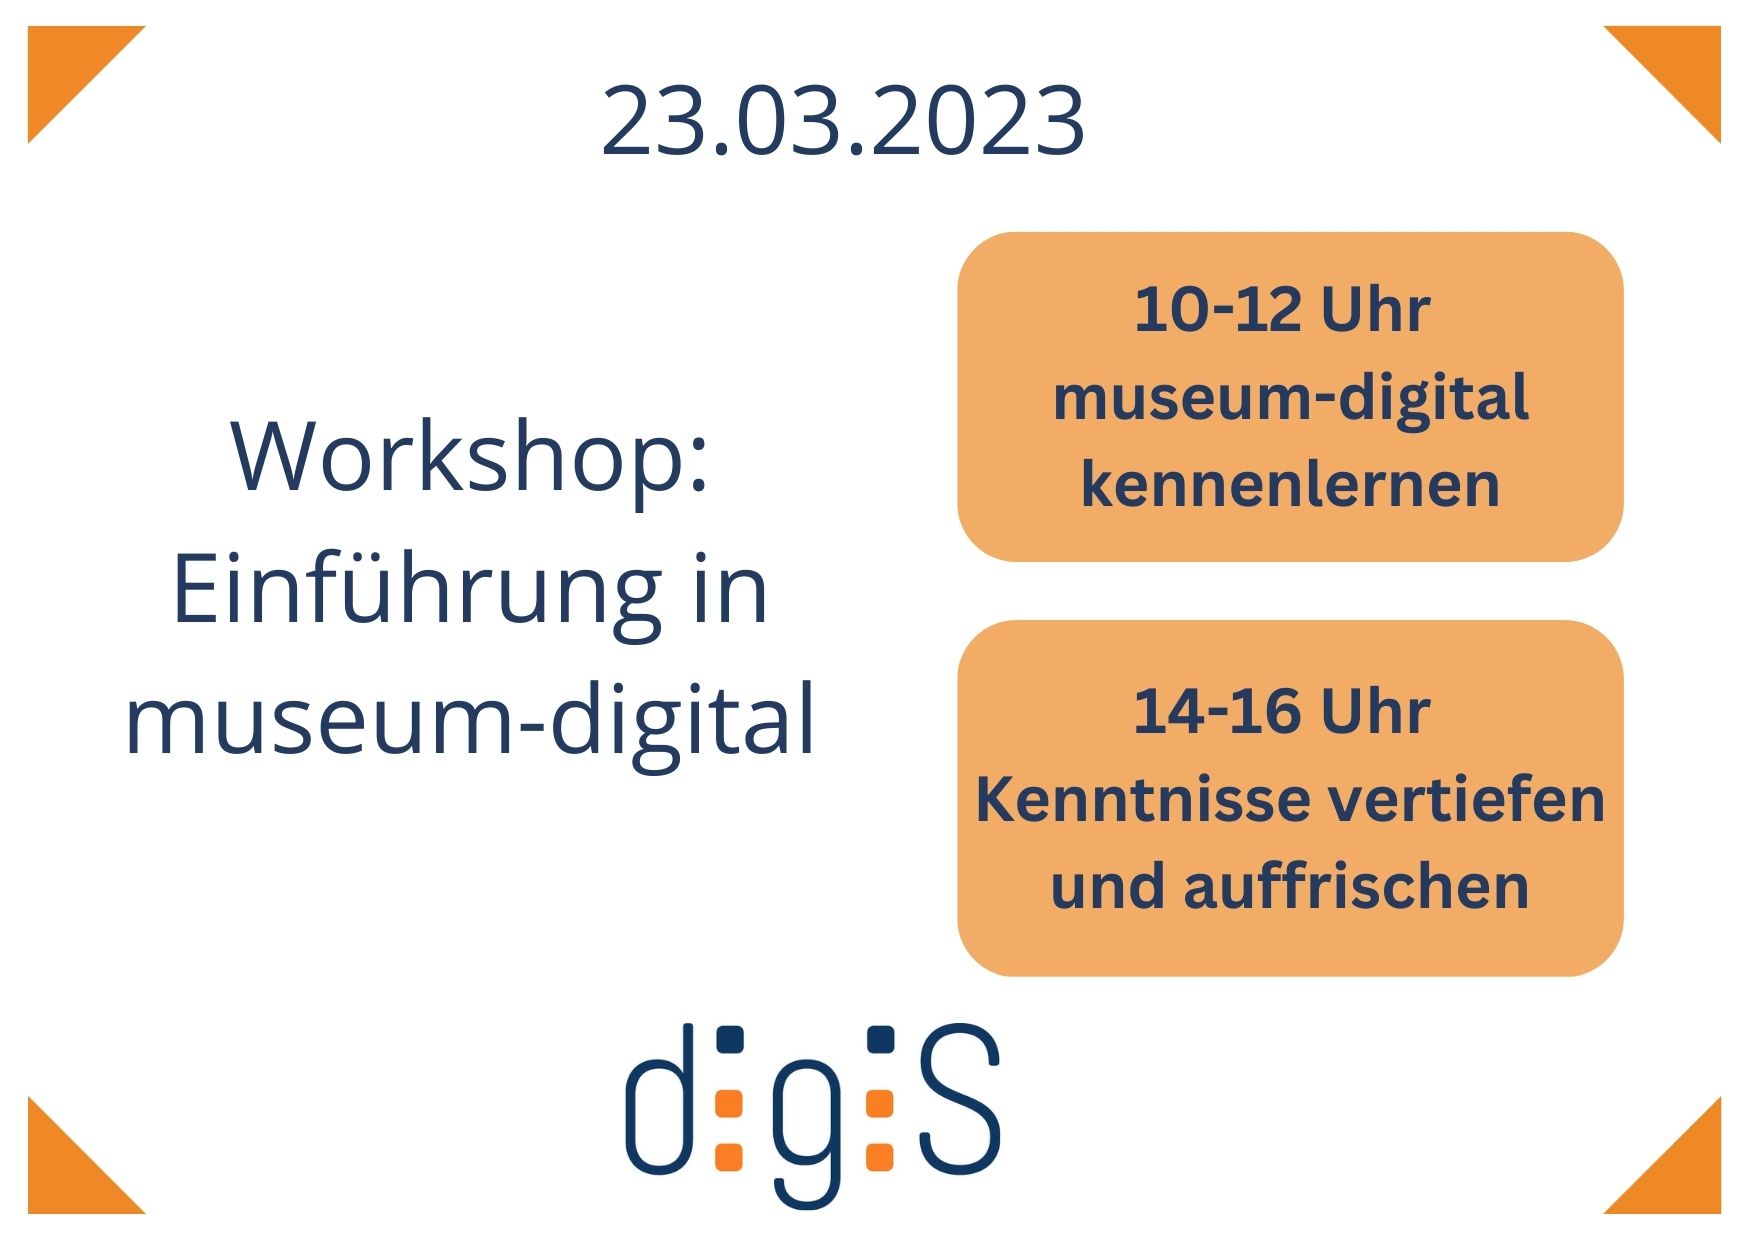 Workshop im Doppelpack: museum-digital